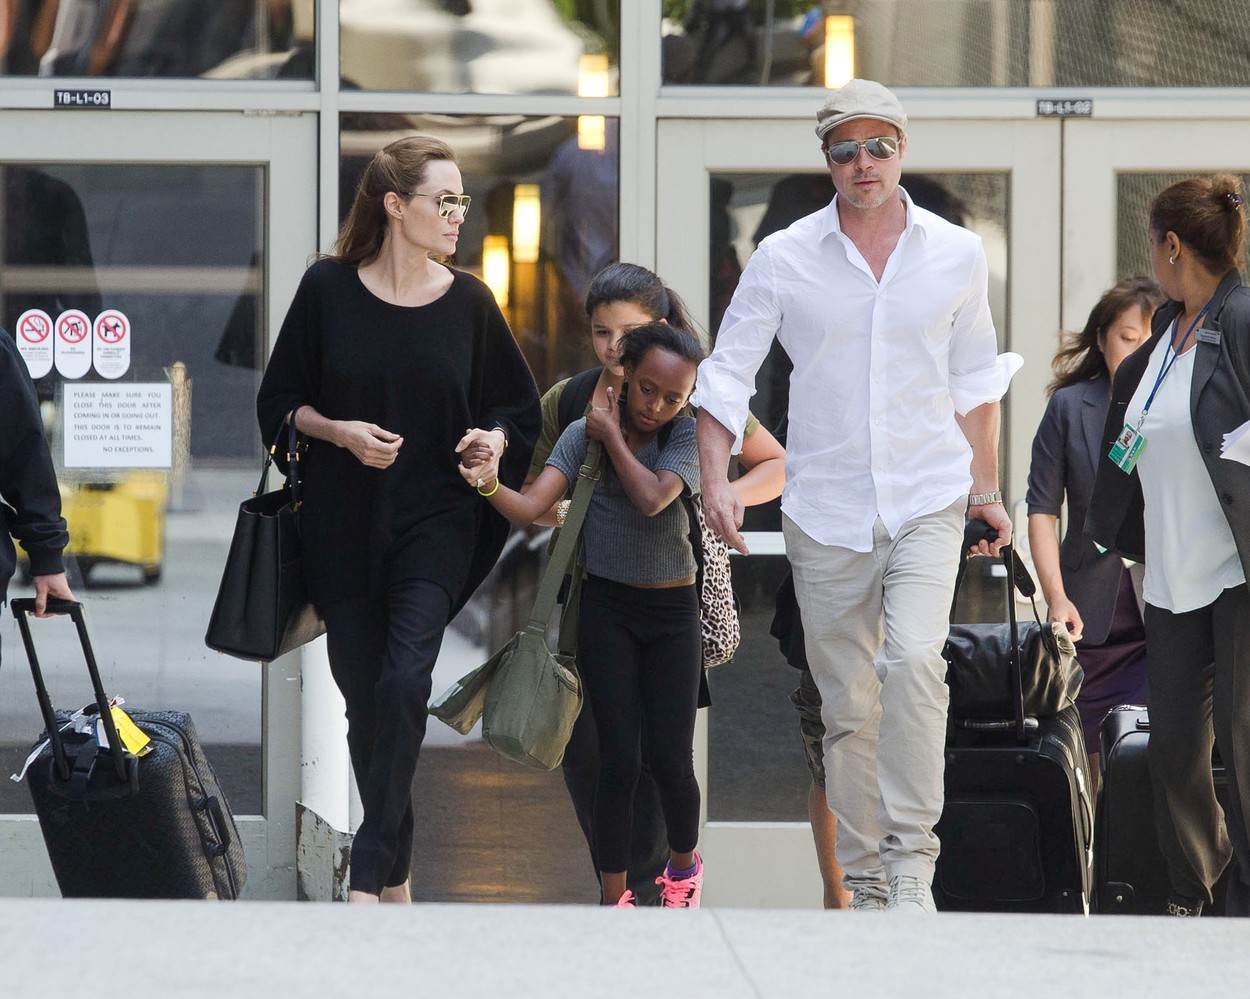 Veliki preokret u obitelji Angeline Jolie i Brada Pitta